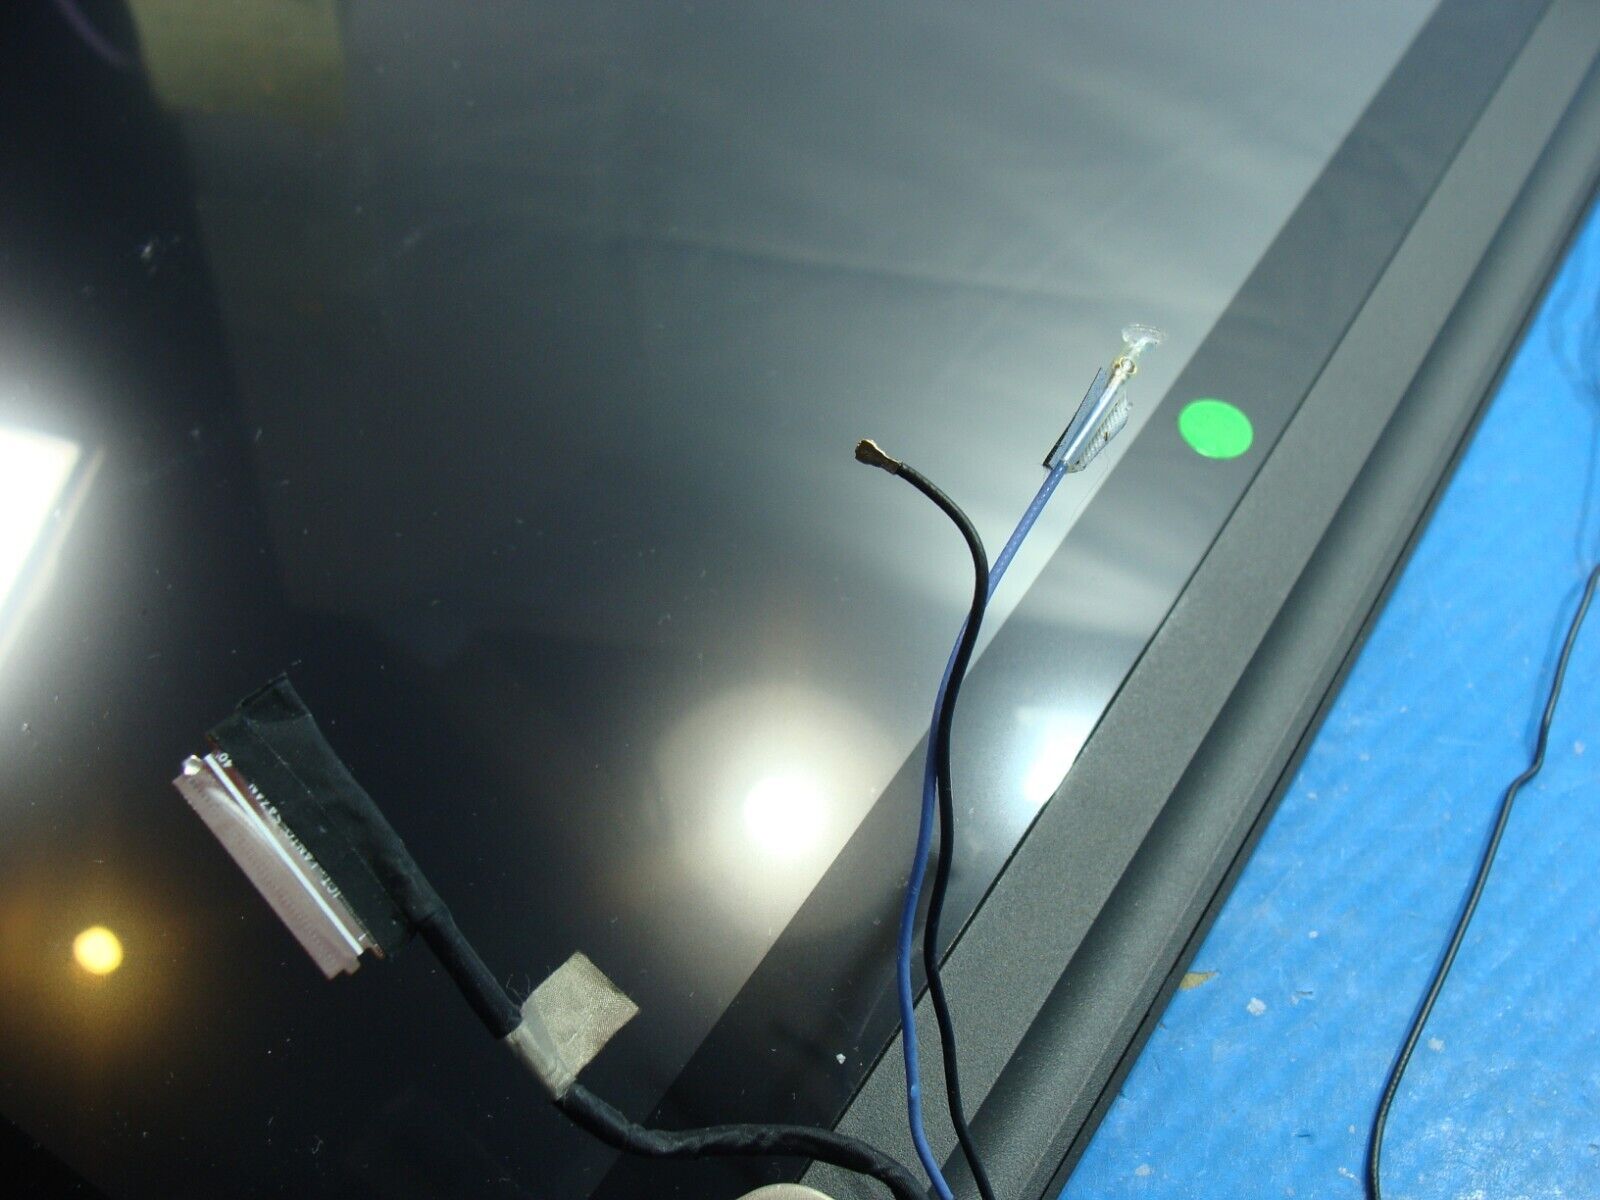 Lenovo ThinkPad T550 15.6